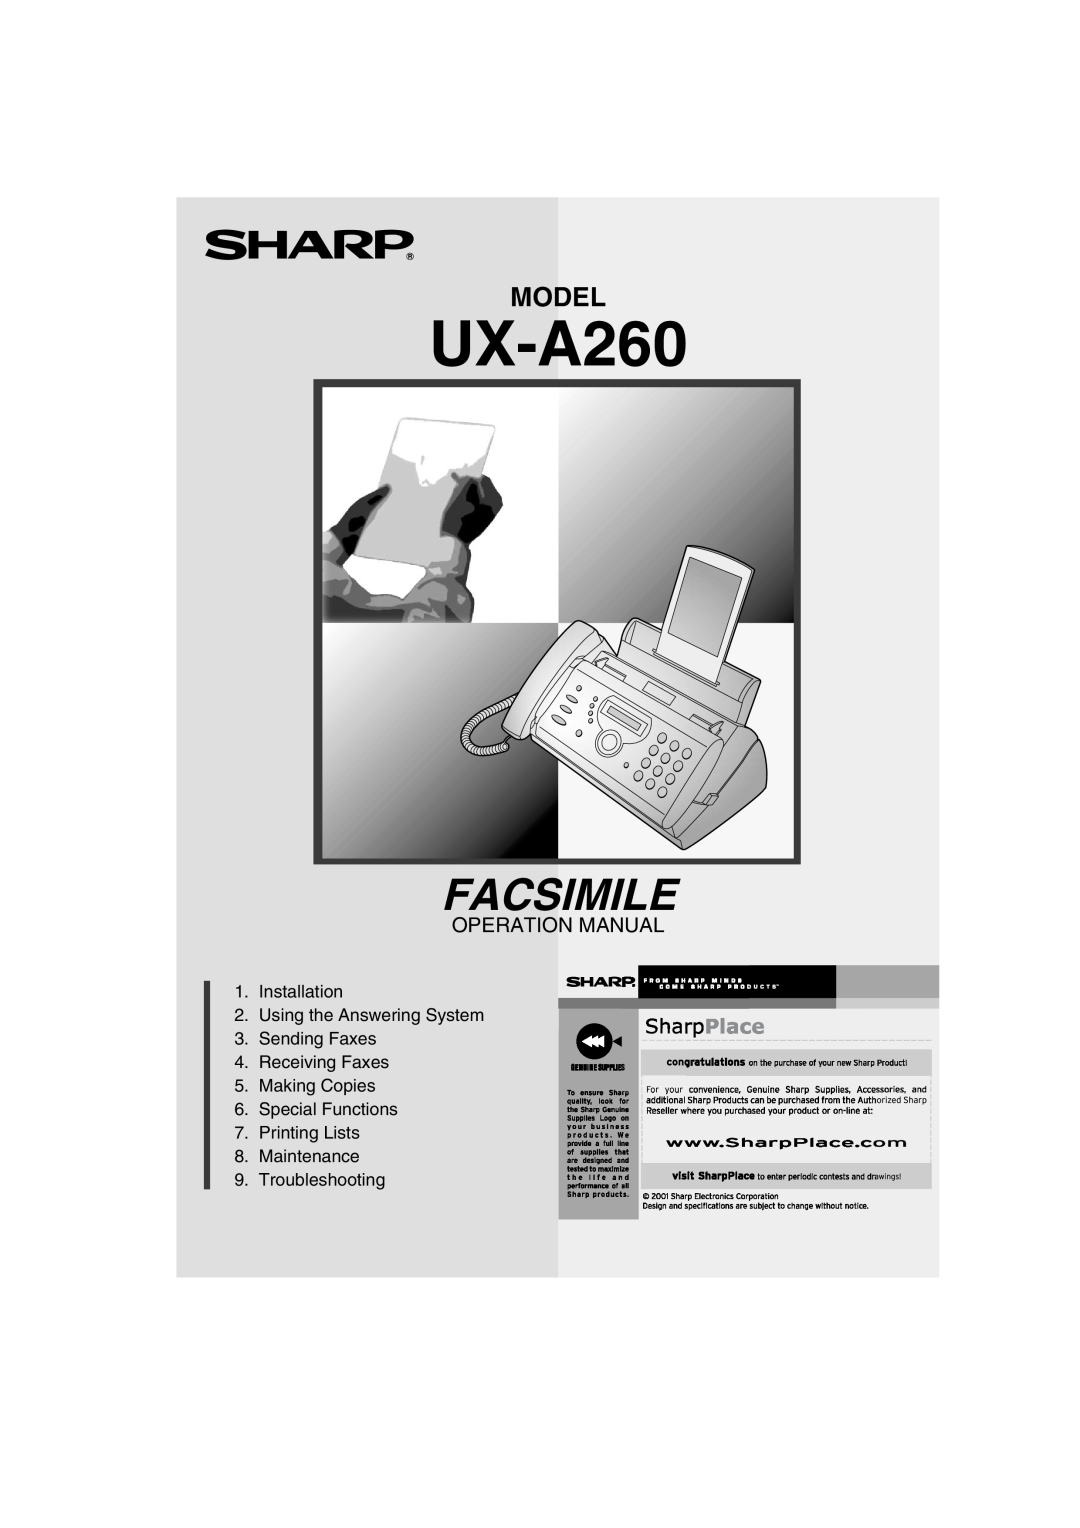 Sharp UX-A260 manual Facsimile, Model, Operation Manual 